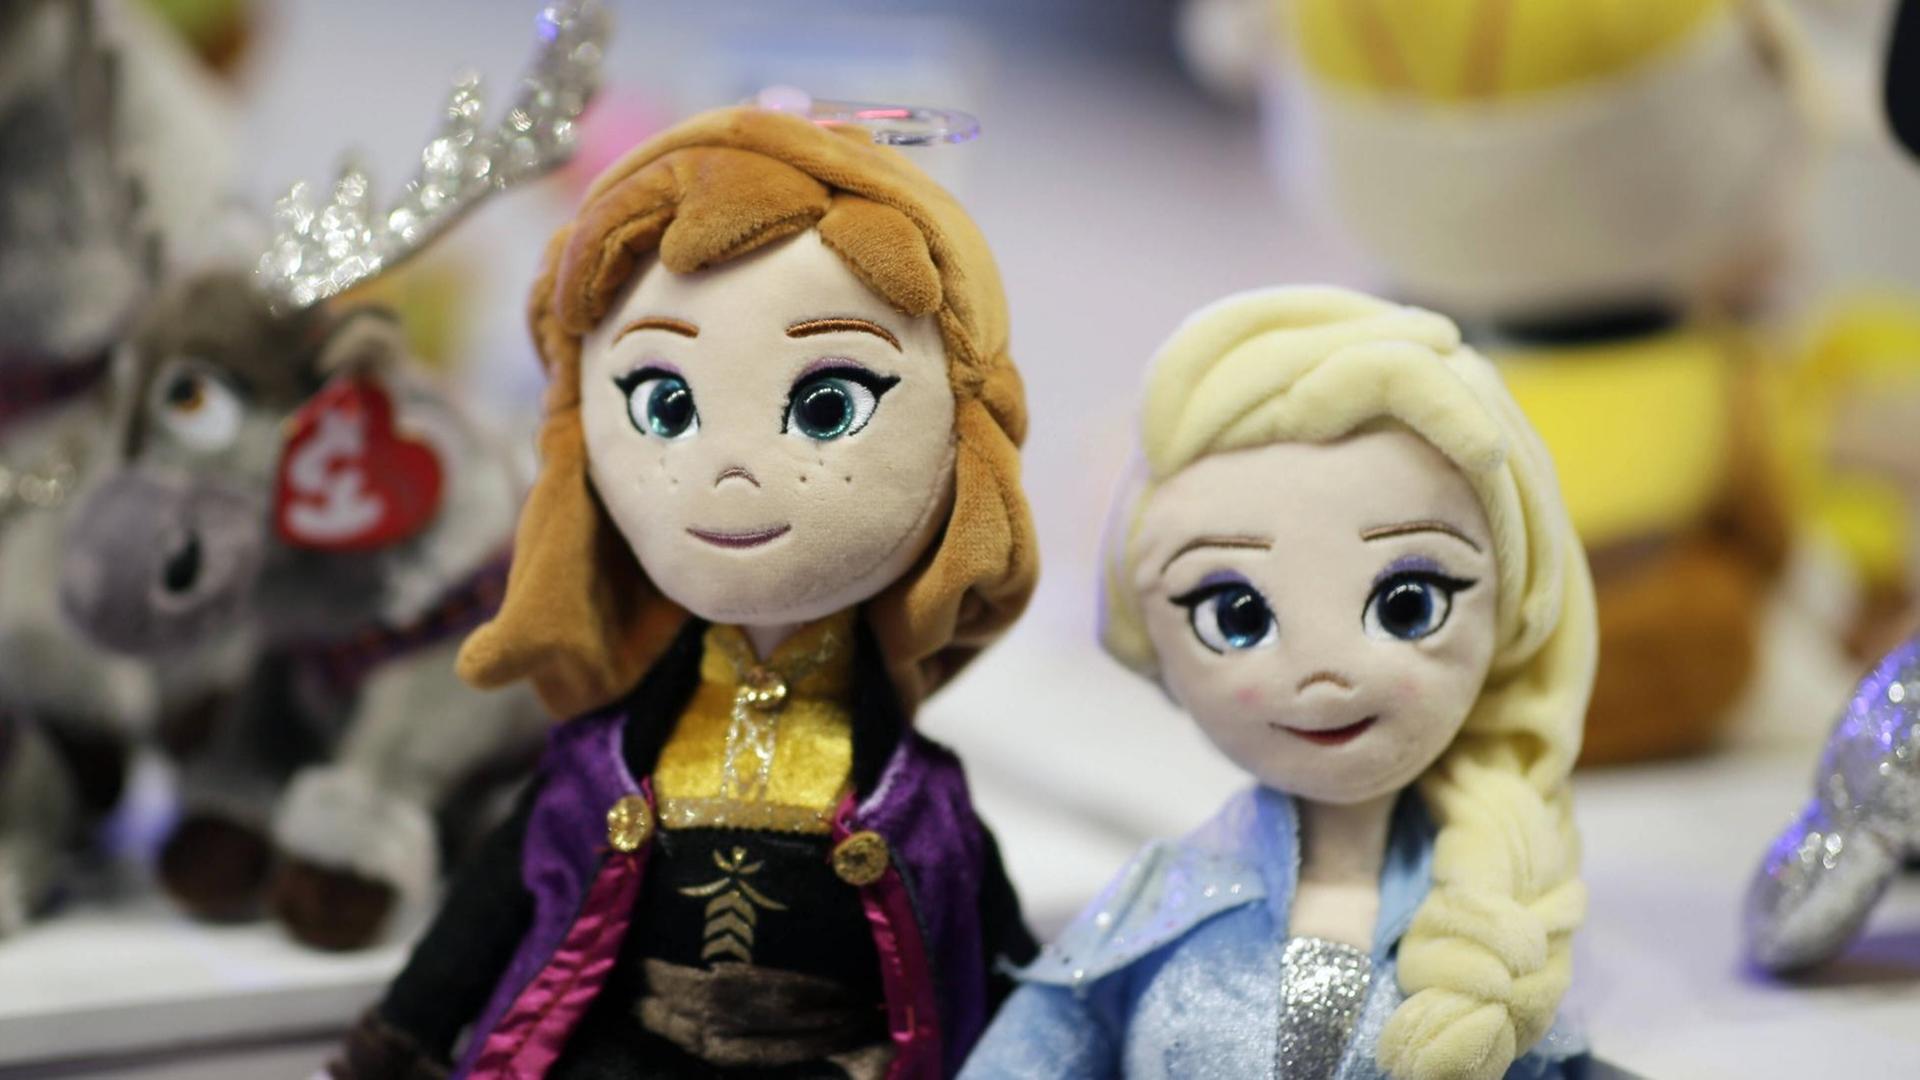 Elsa and Anna aus der Disneyproduktion "Frozen" als Puppen.